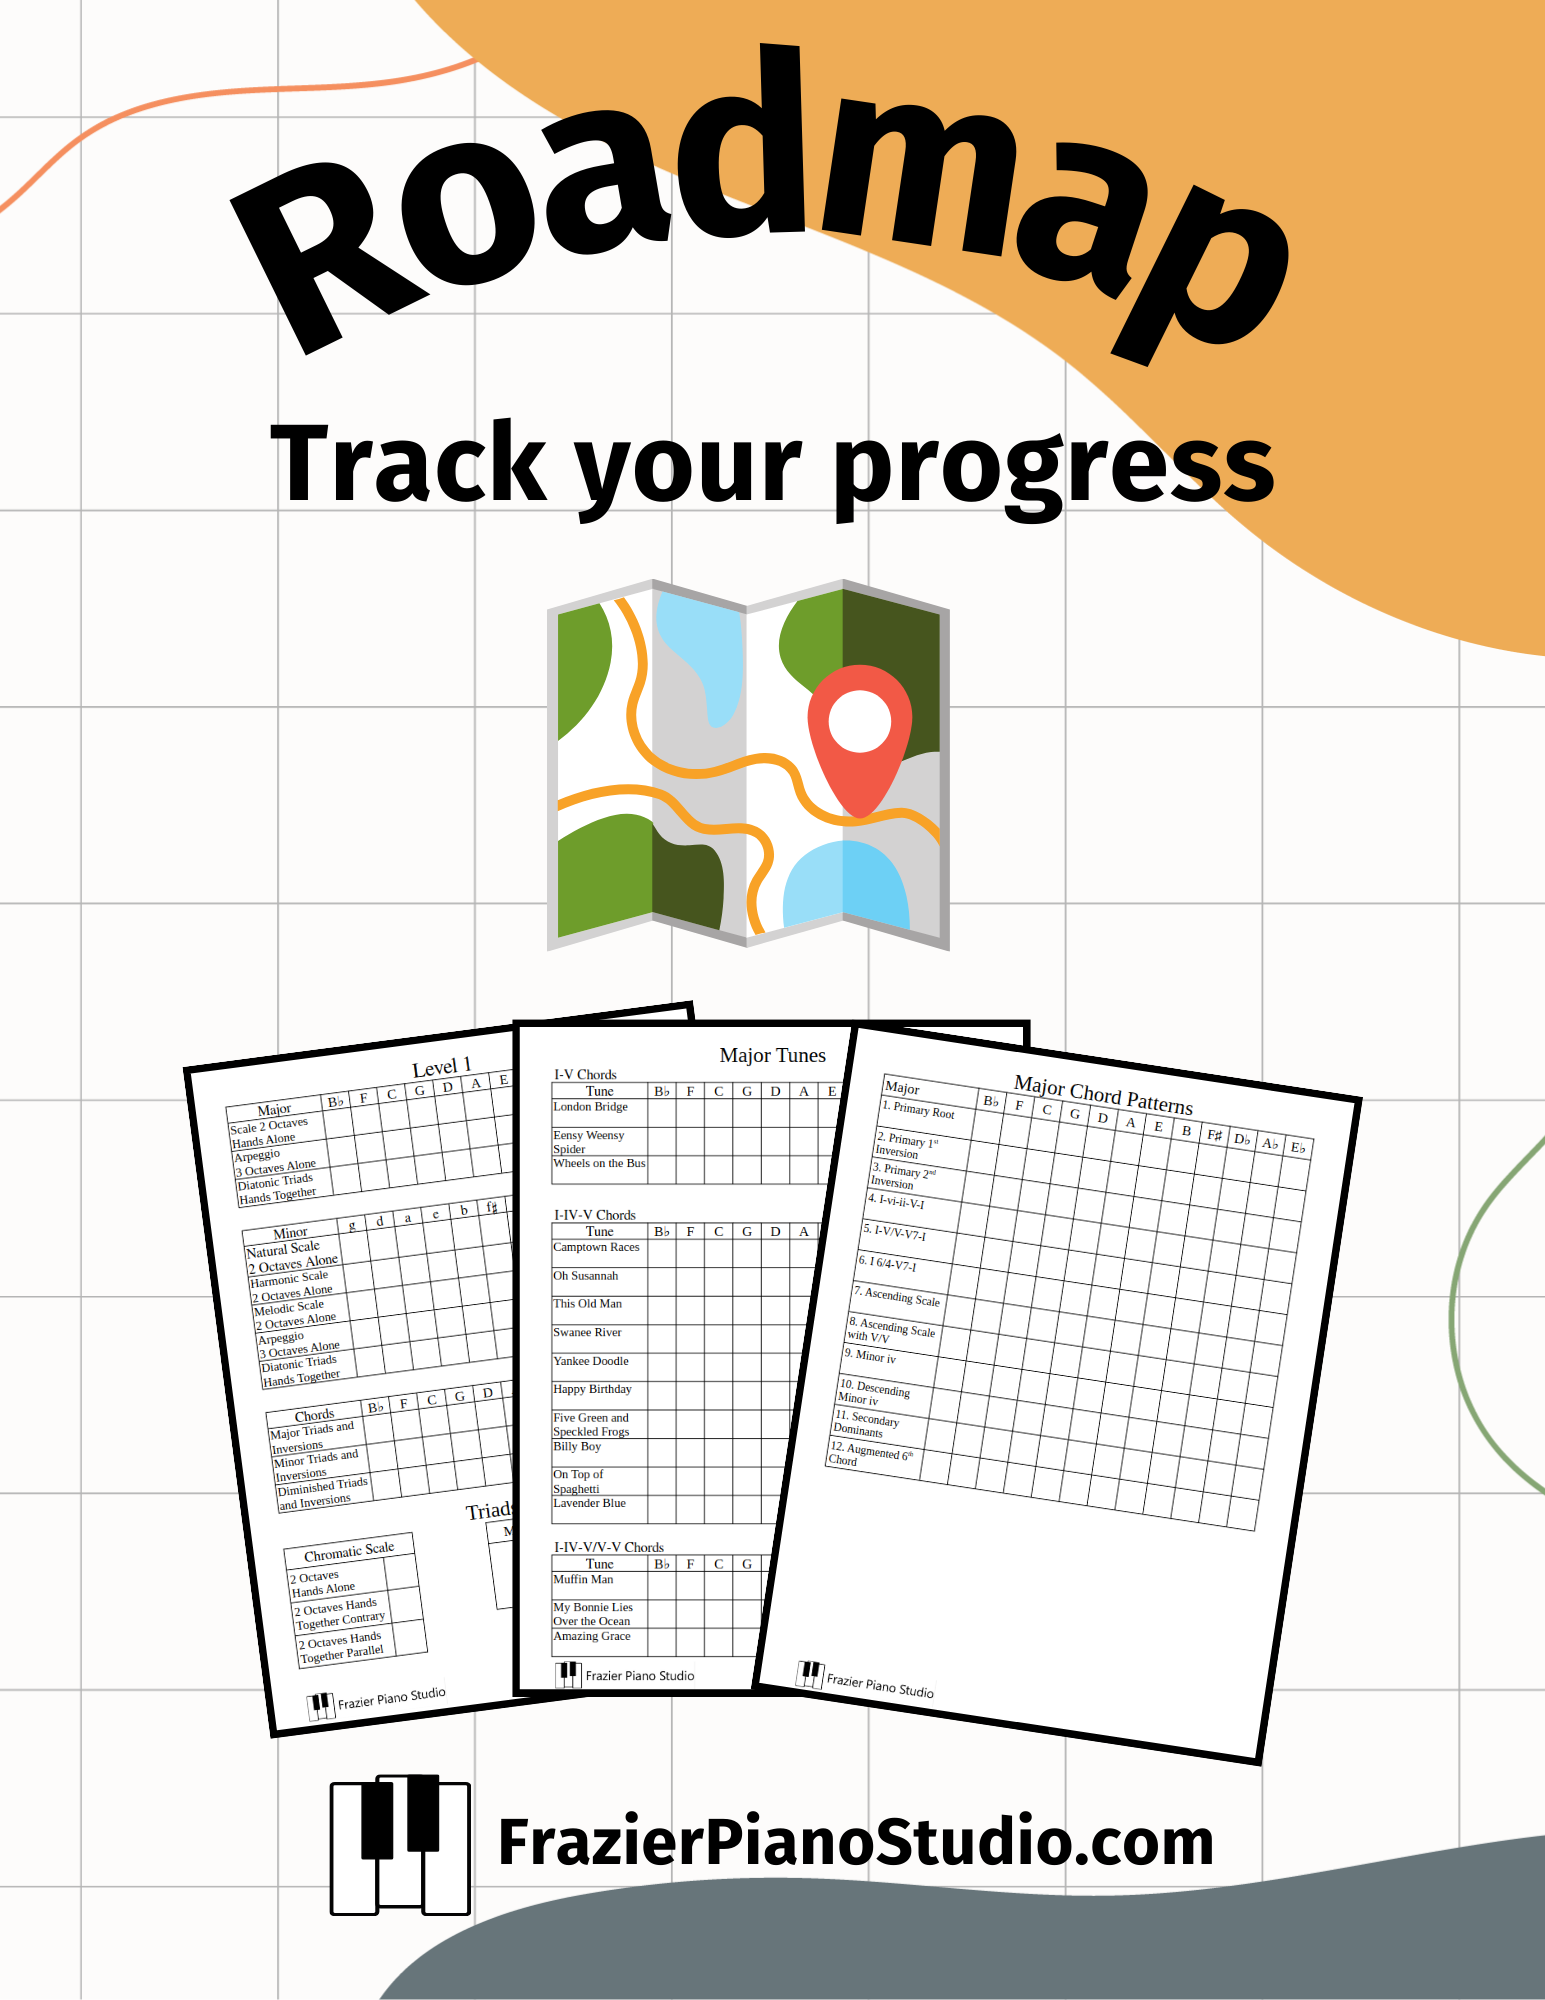 Roadmap Flyer